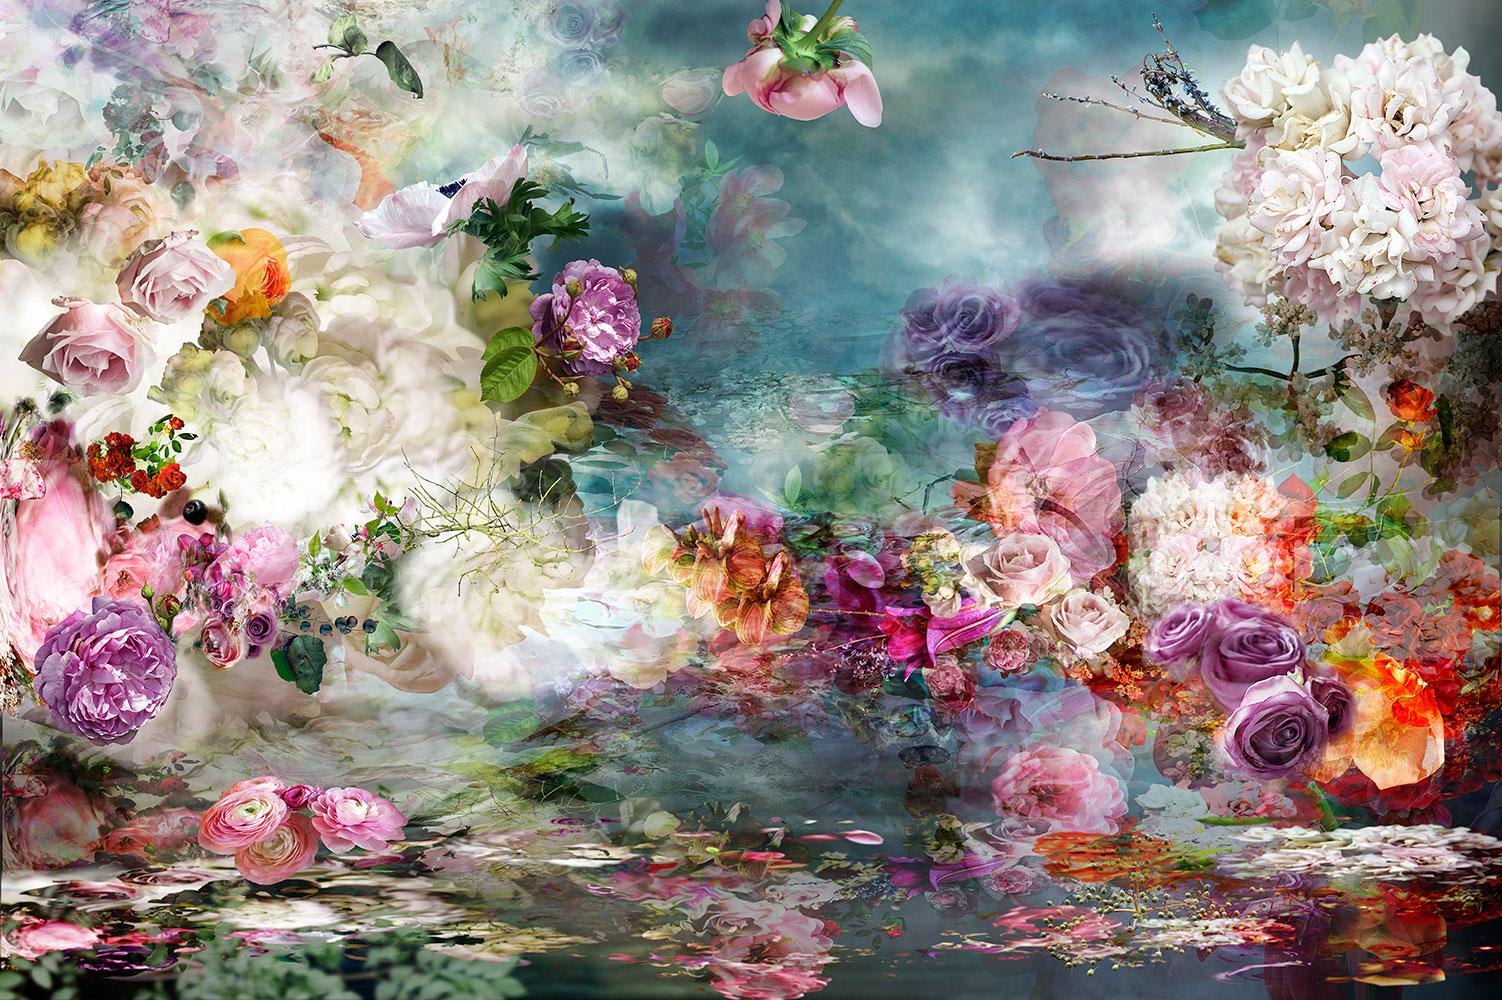 Still-Life Photograph Isabelle Menin - River 12 - Photographie contemporaine de nature morte florale colorée bleue et blanche